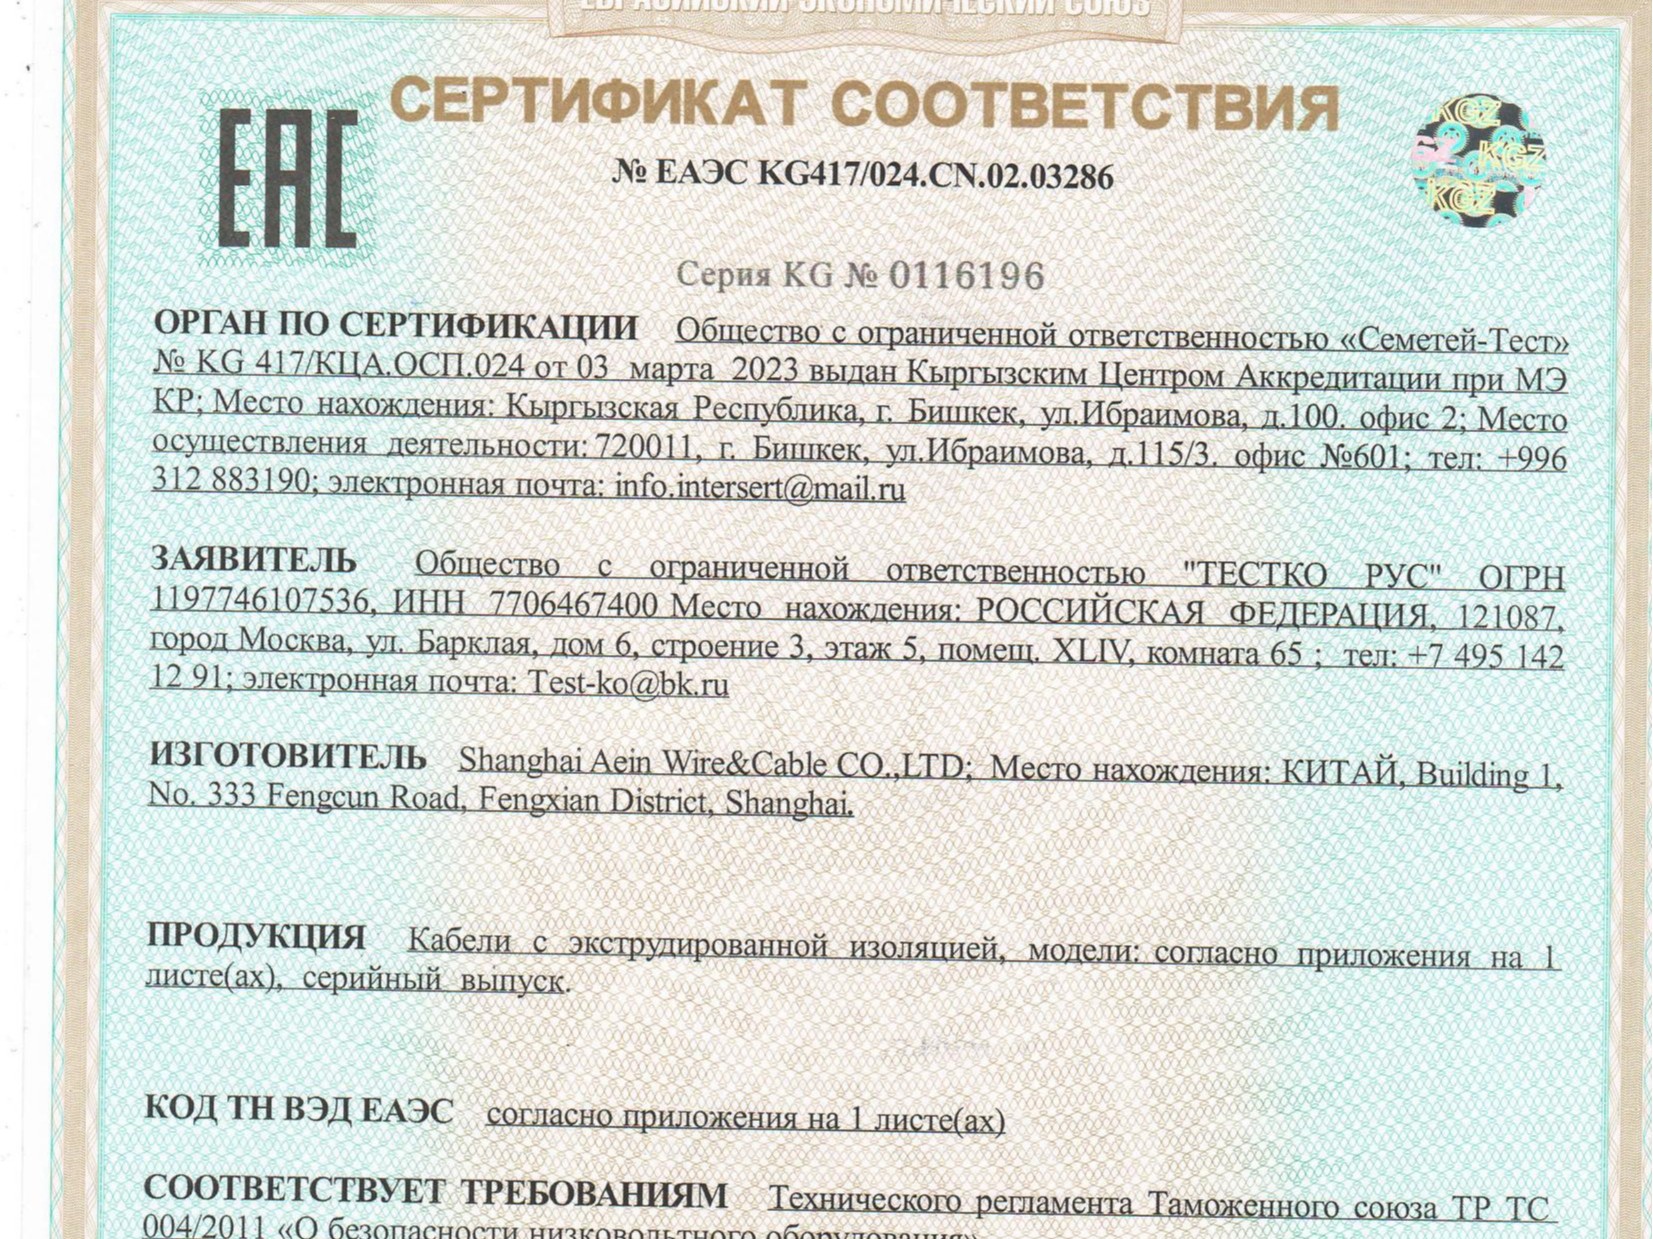 热烈祝贺上海埃因线缆取得俄罗斯EAC认证证书